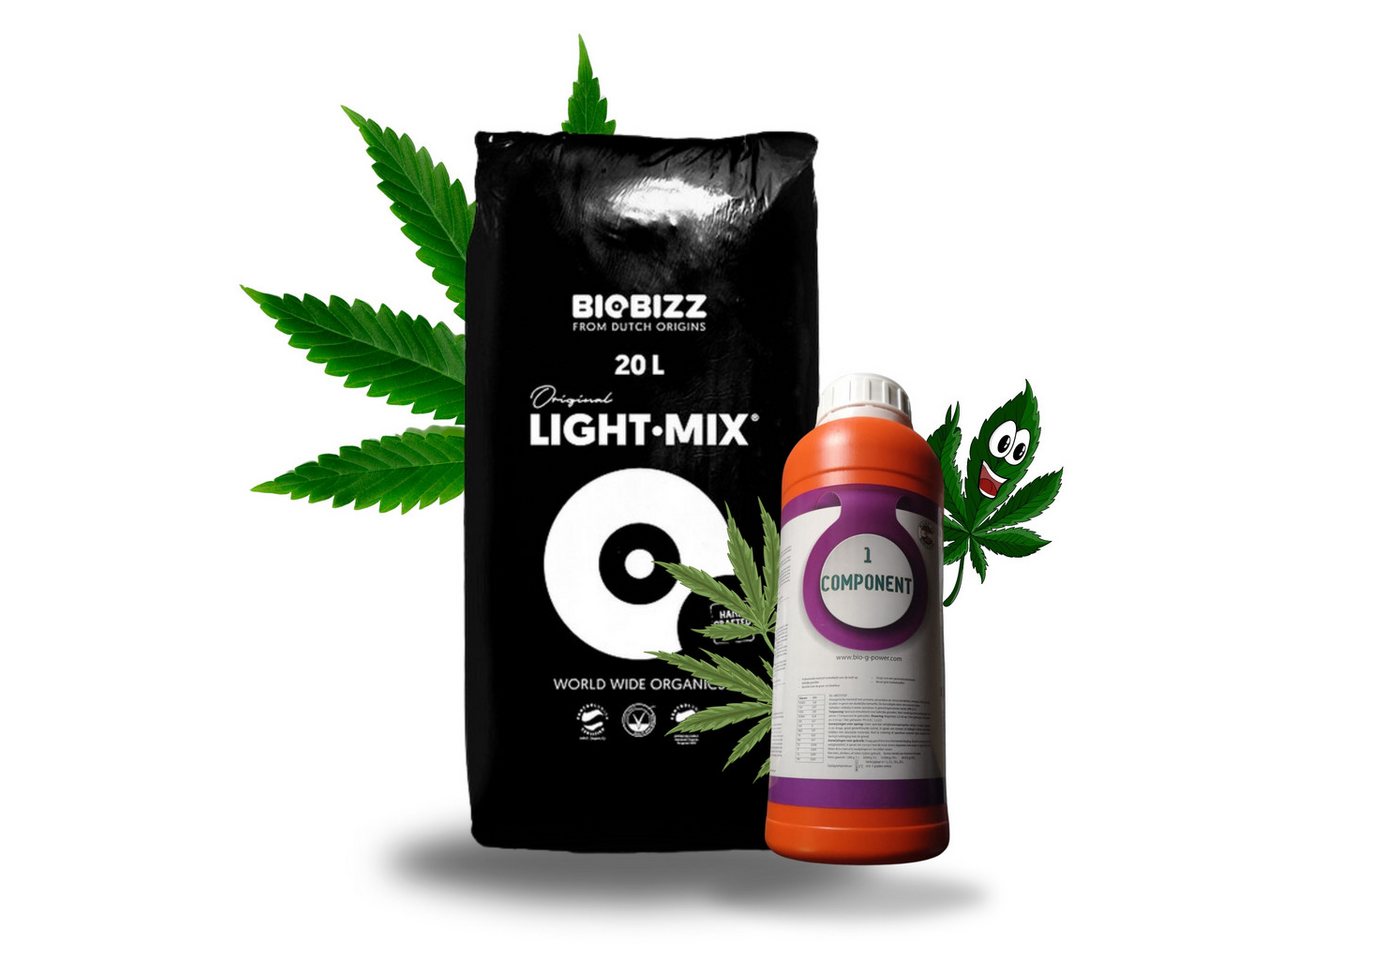 TronicXL Anzucht- und Kräutererde Dünger für BioBizz Set + Light Mix Grow Erde Cannabis Lightmix Soil, mit Premiumdünger von TronicXL